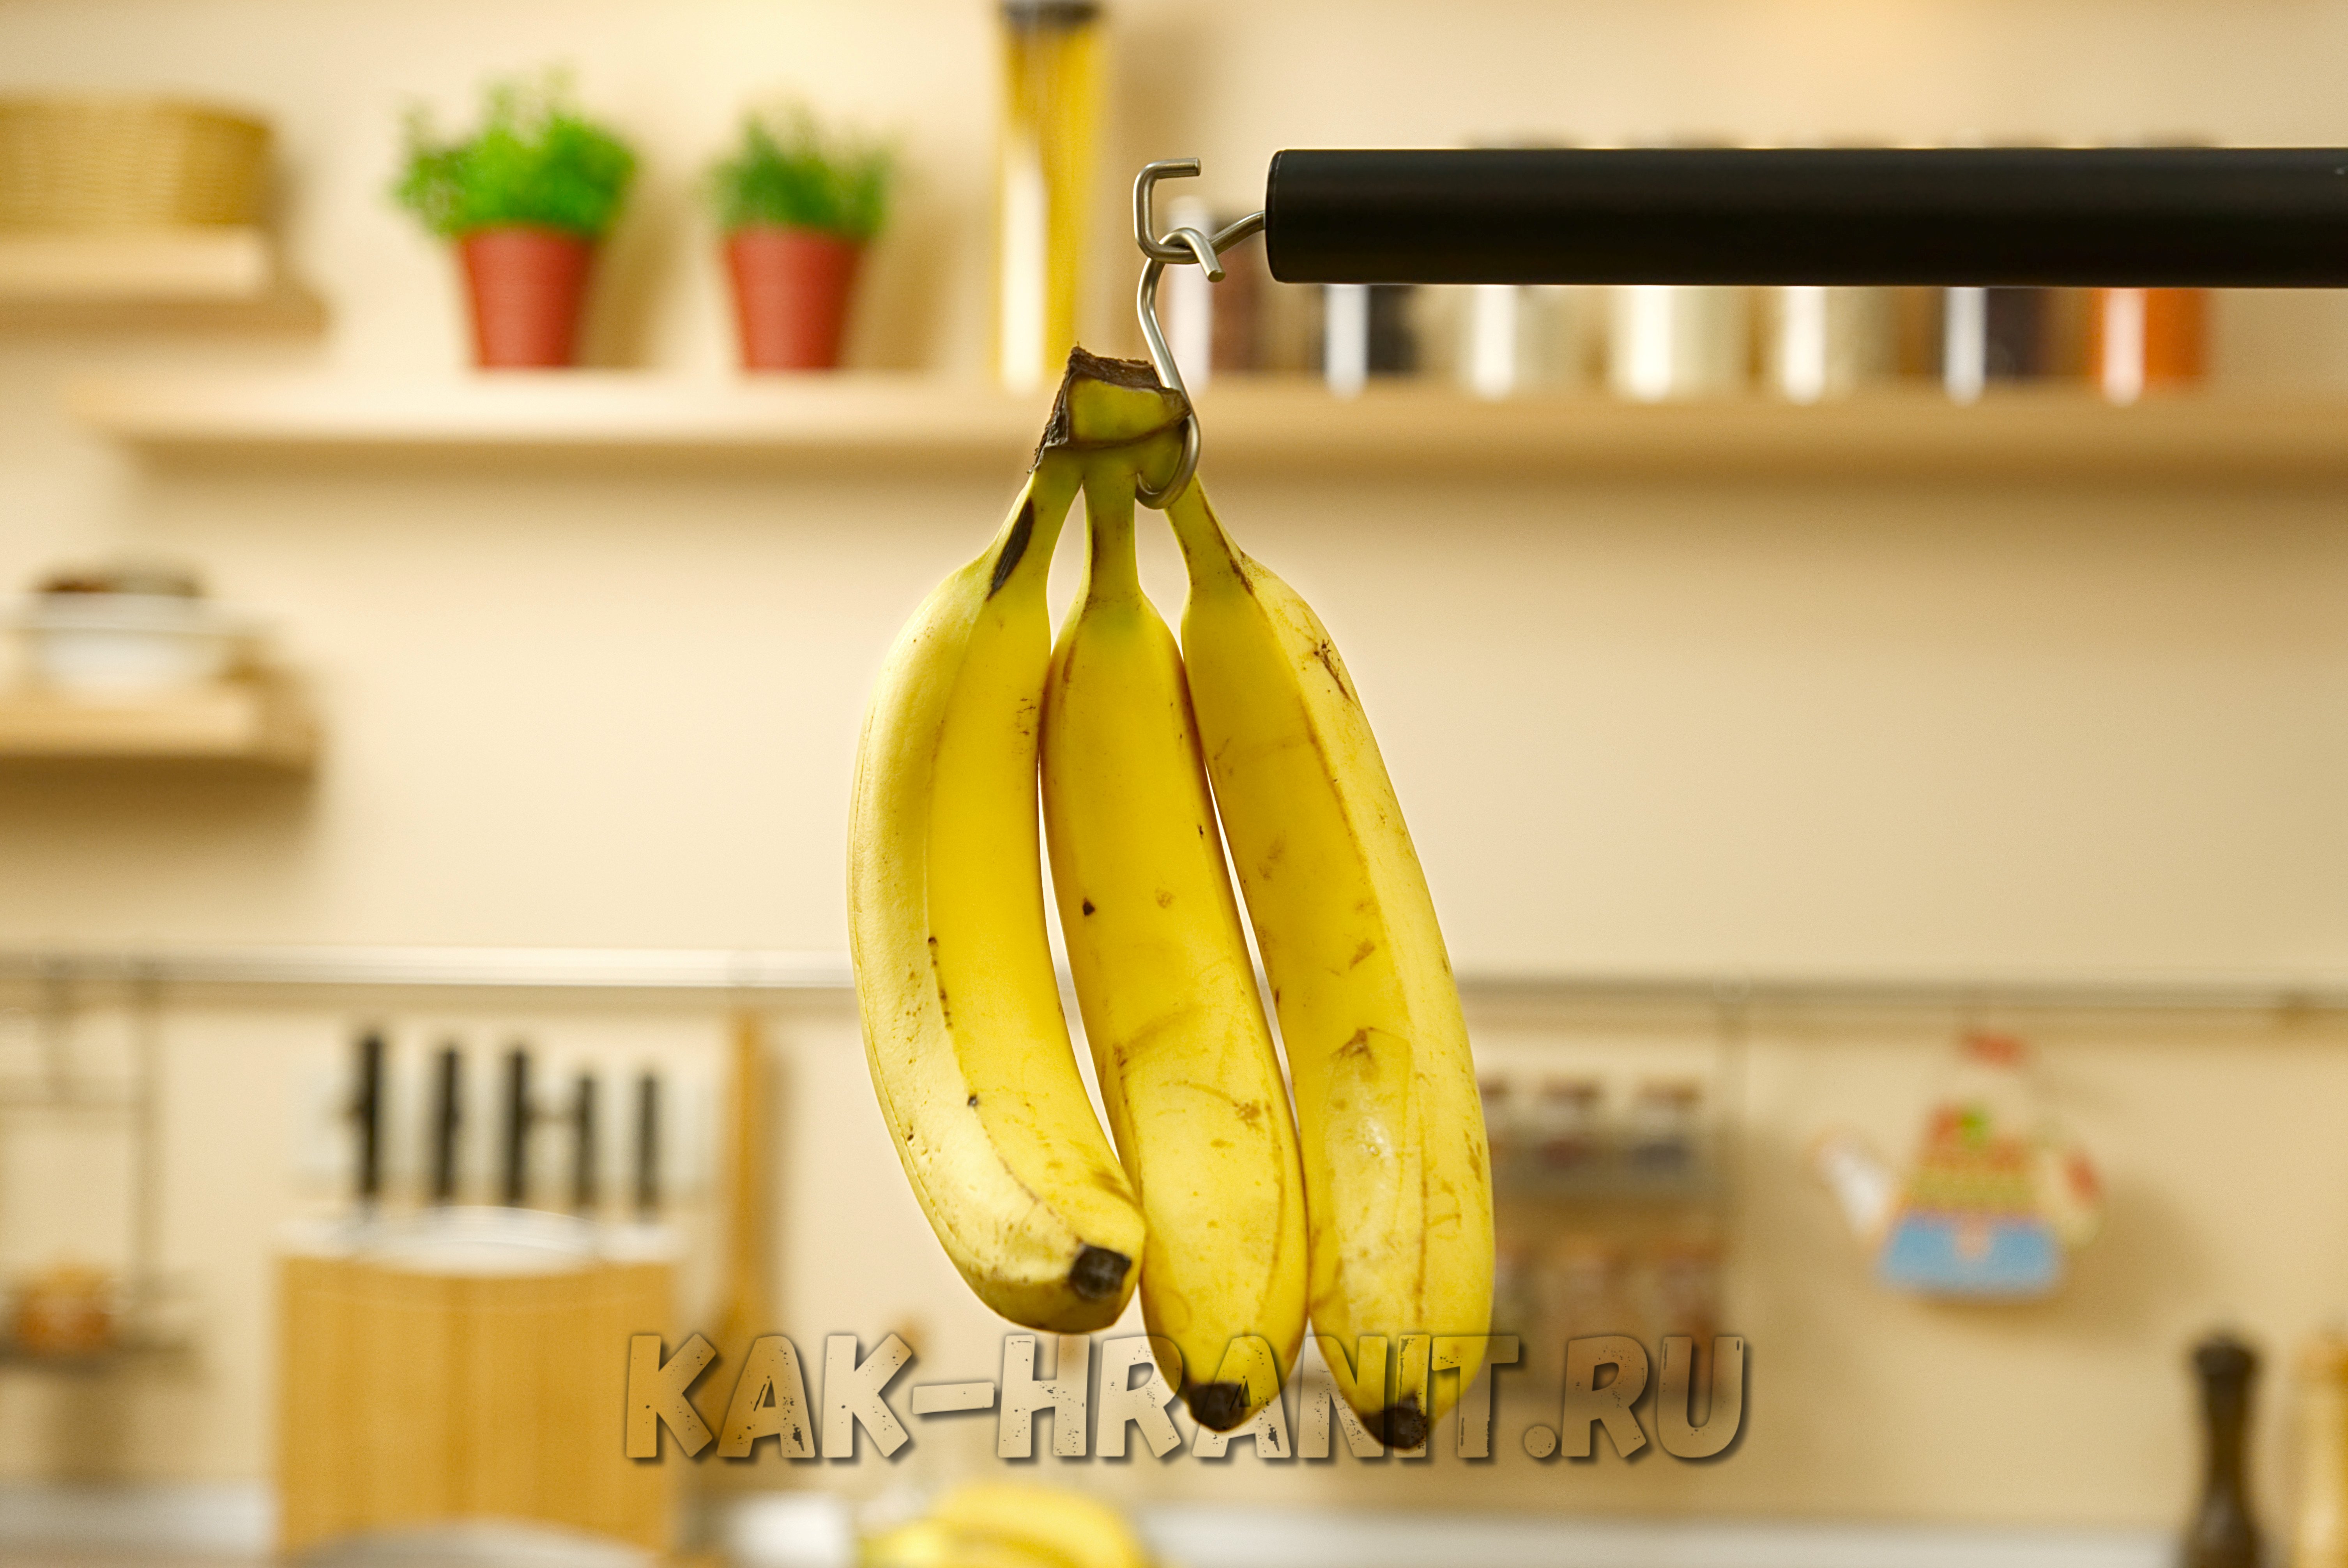 Где хранить бананы в домашних условиях чтобы они не почернели?